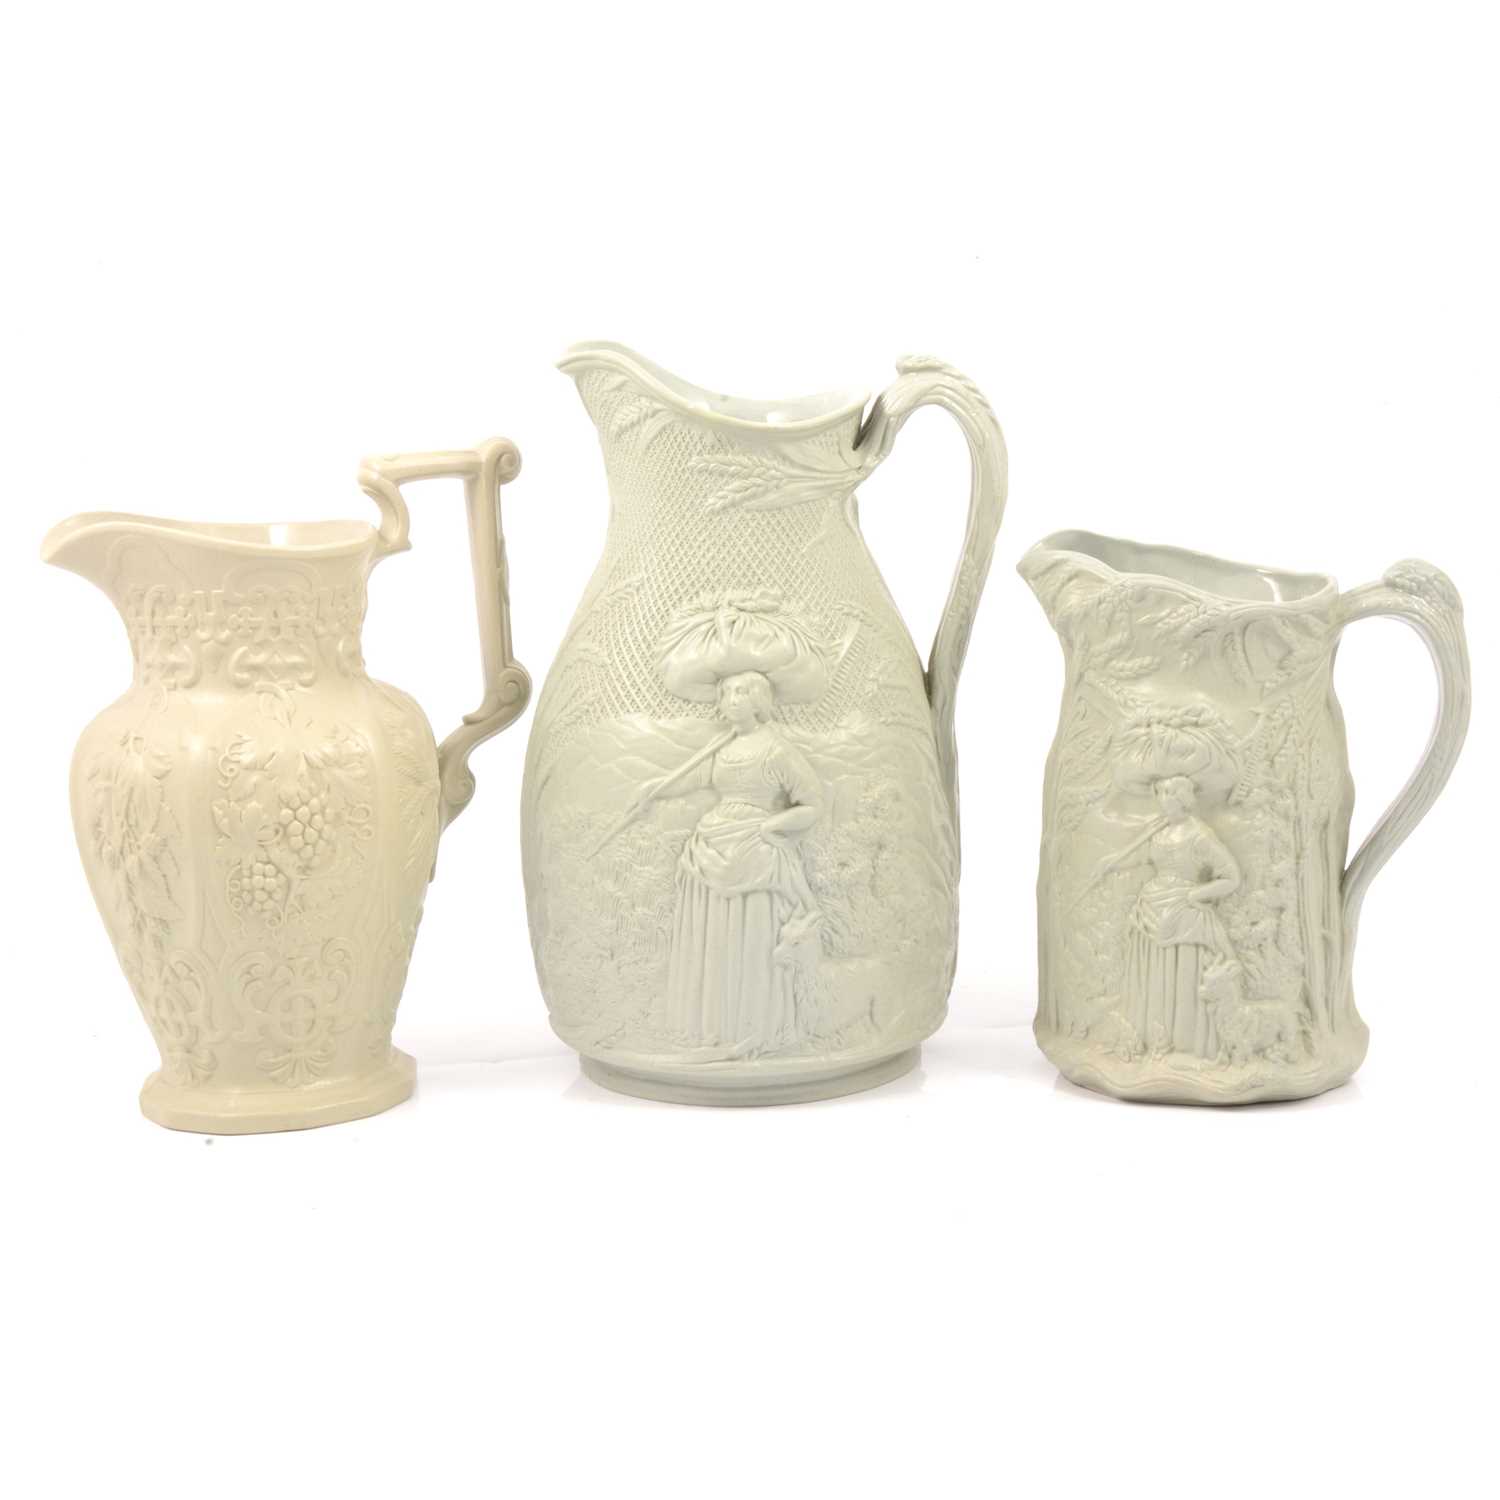 Lot 60 - Stoneware Gleaner jug, Harvest jug and a Hops & Barley jug